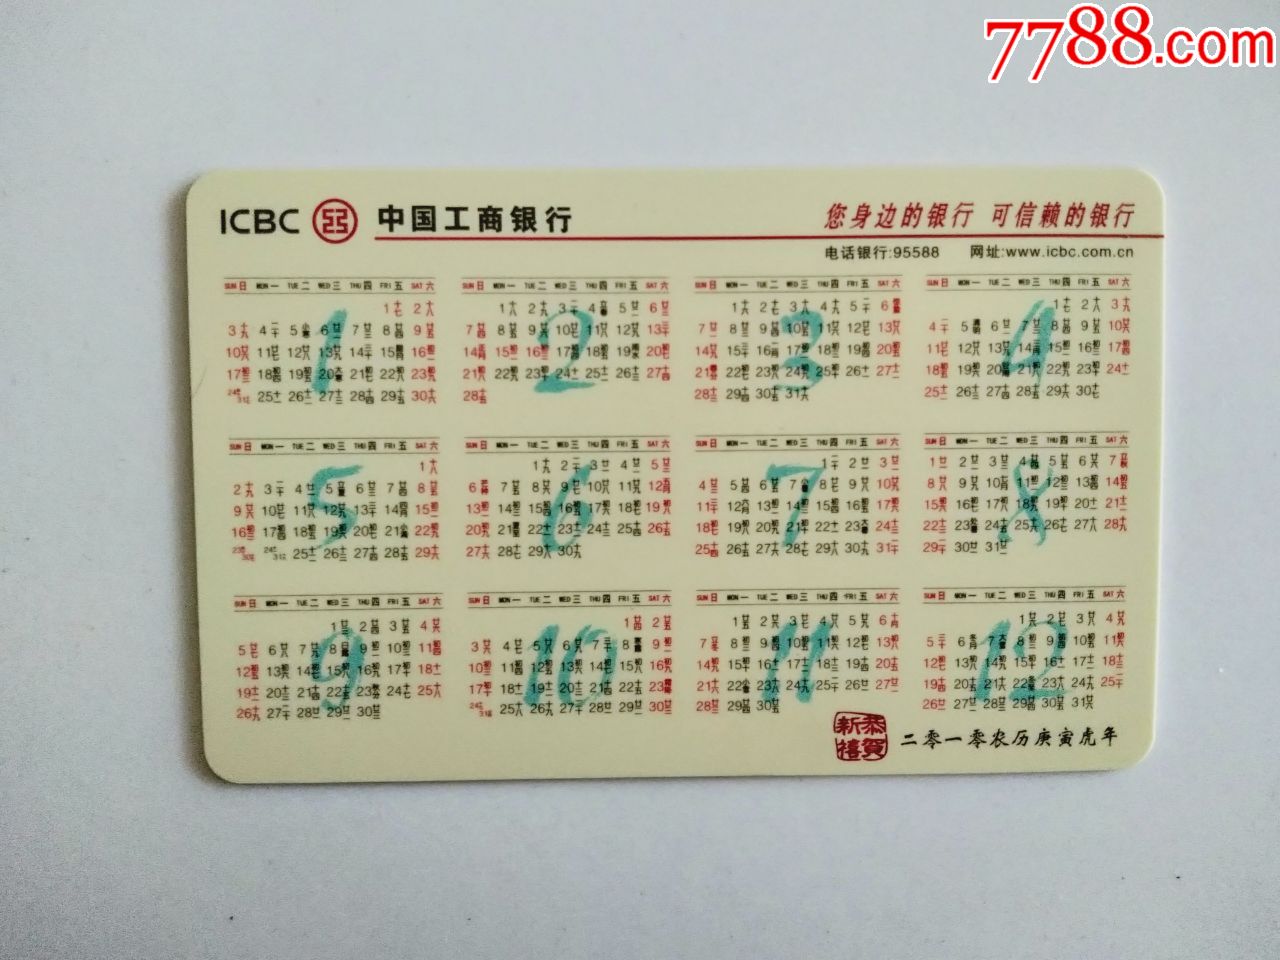 2010年中国工商银行年历卡